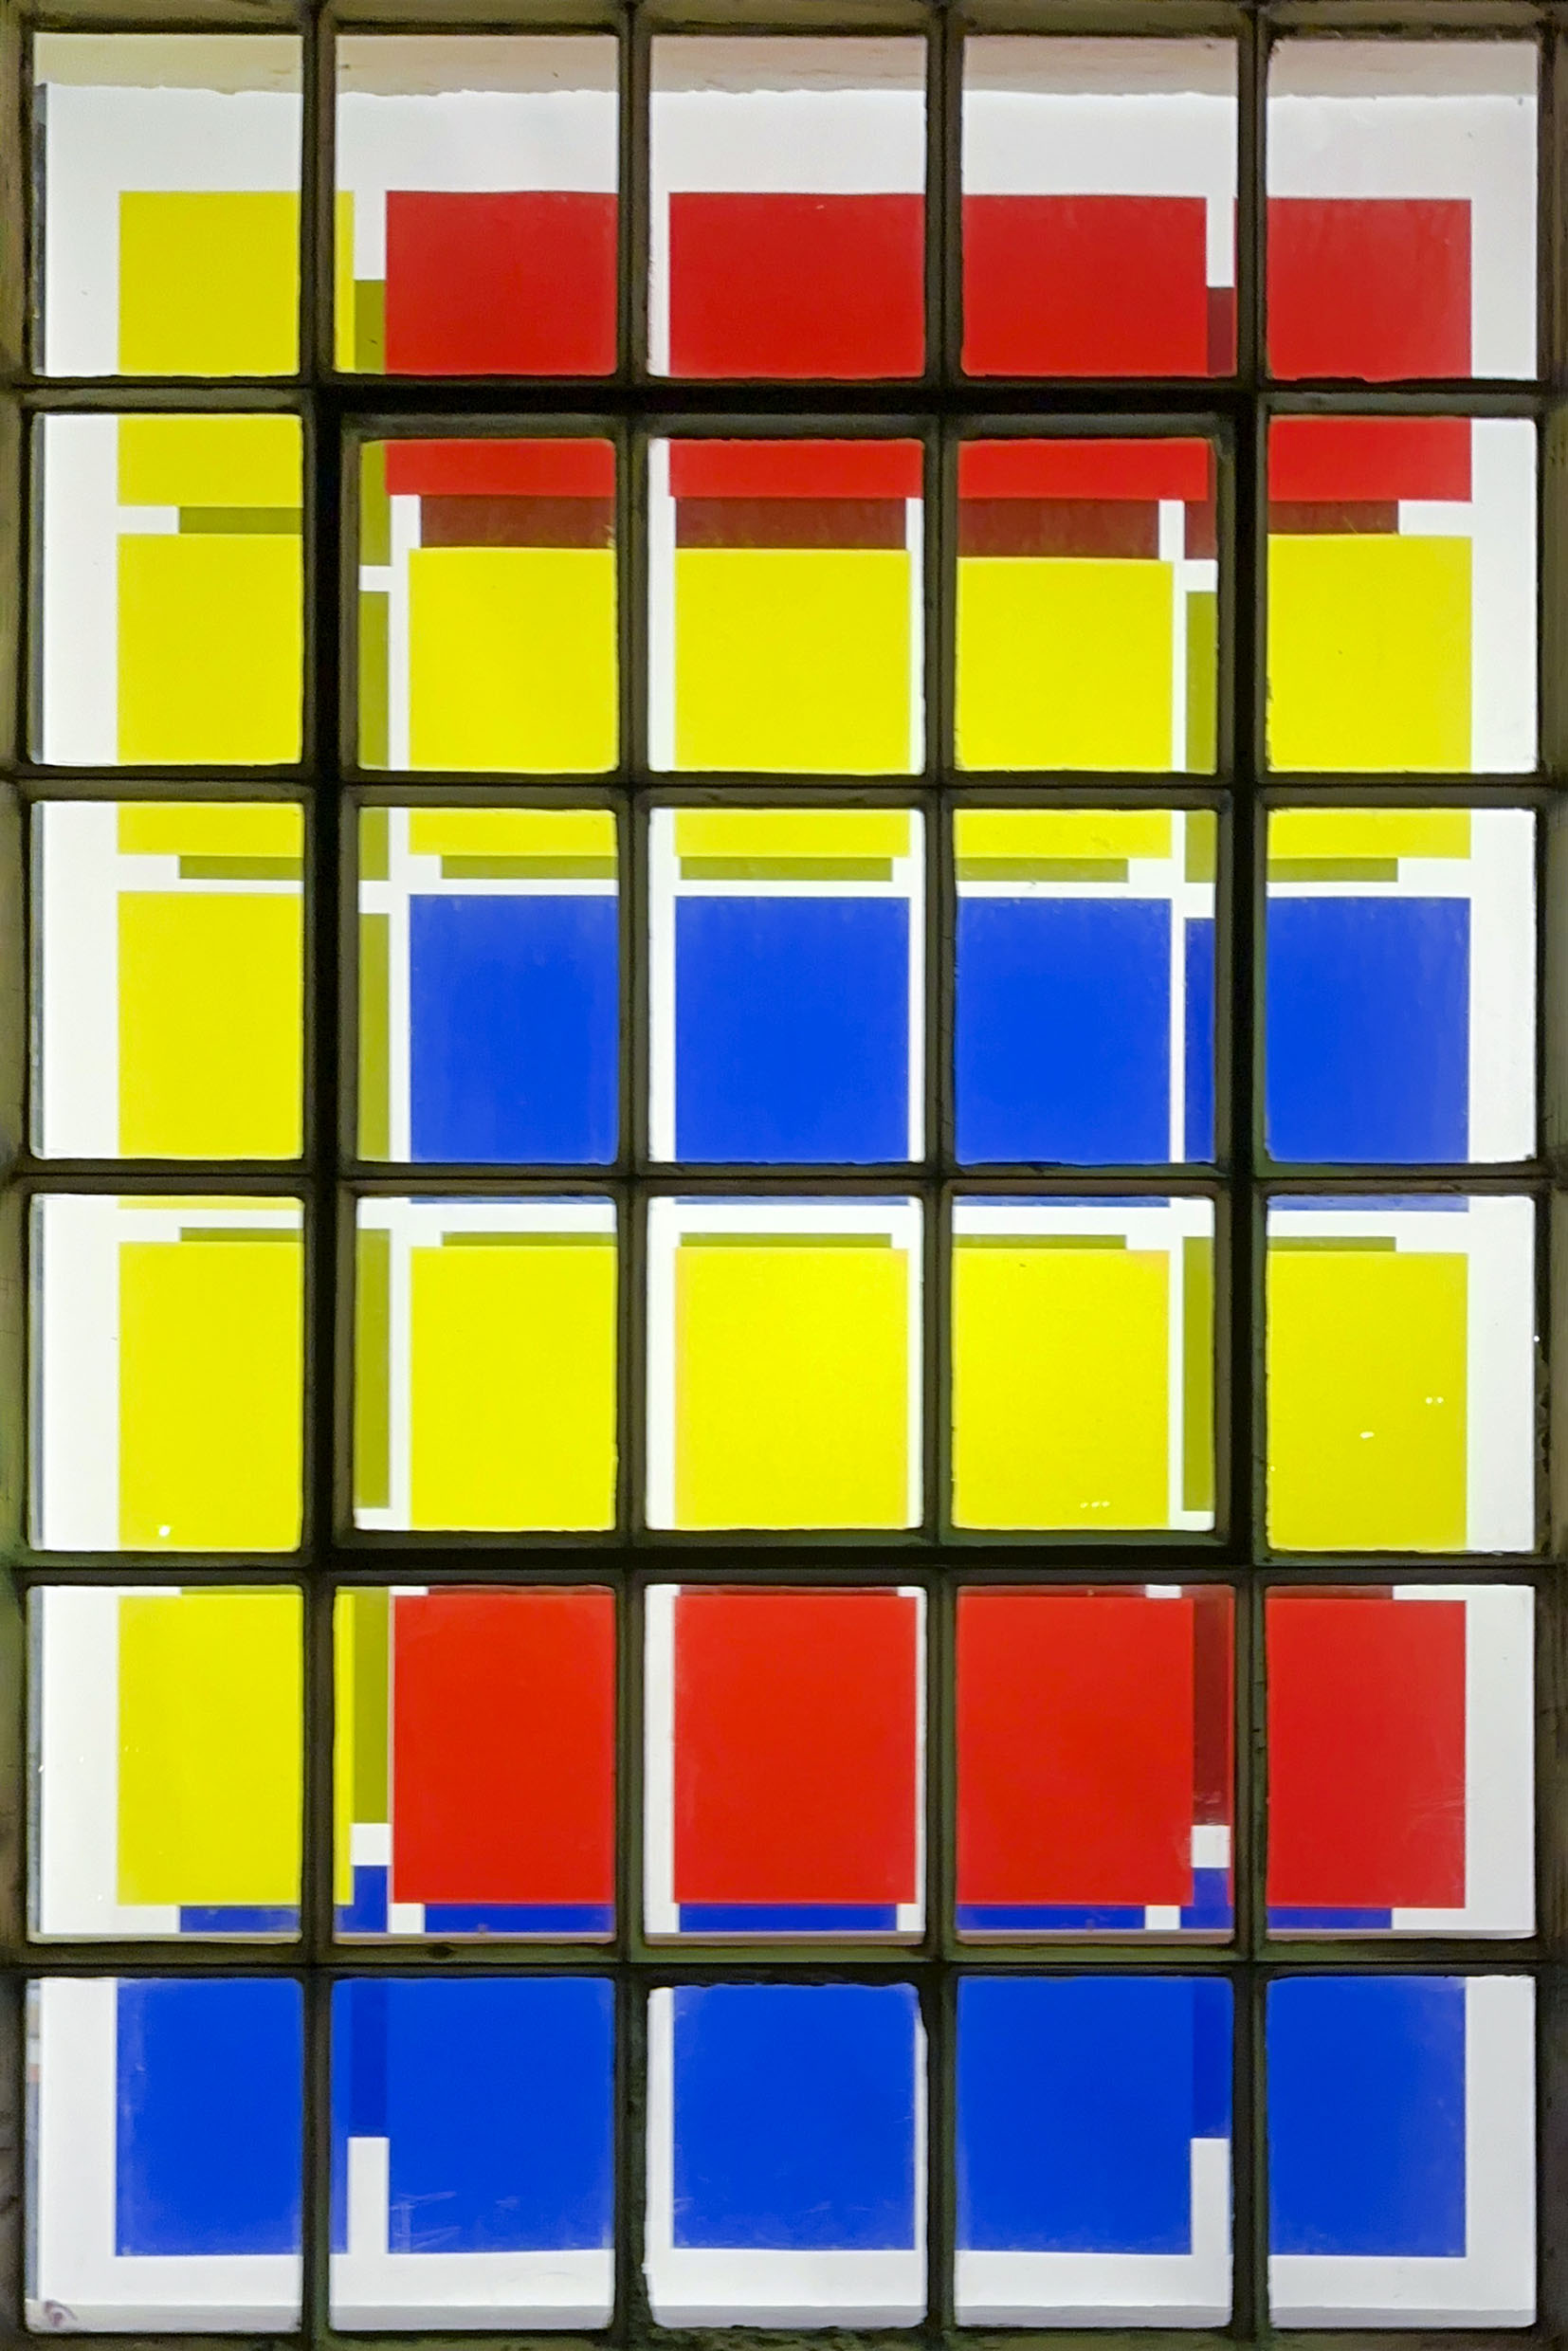 Verein für aktuelle Kunst / Ruhrgebiet, Oberhausen zeigt die Installation Farb – Licht – Spiel von Nikola Dimitrov & Norbert Thomas